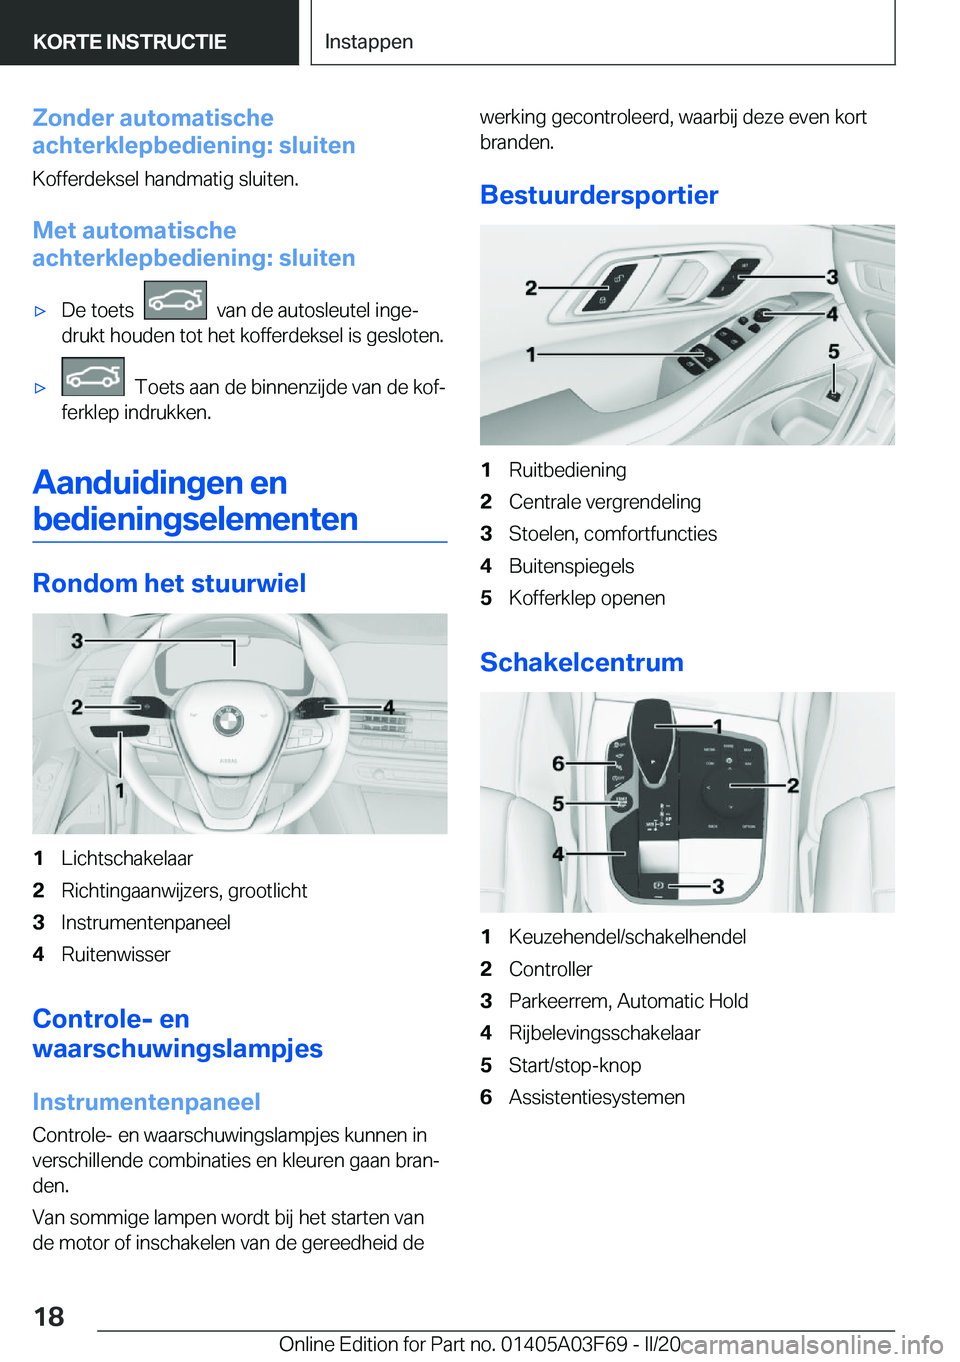 BMW 3 SERIES 2020  Instructieboekjes (in Dutch) �Z�o�n�d�e�r��a�u�t�o�m�a�t�i�s�c�h�e
�a�c�h�t�e�r�k�l�e�p�b�e�d�i�e�n�i�n�g�:��s�l�u�i�t�e�n
�K�o�f�f�e�r�d�e�k�s�e�l��h�a�n�d�m�a�t�i�g��s�l�u�i�t�e�n�.
�M�e�t��a�u�t�o�m�a�t�i�s�c�h�e
�a�c�h�t